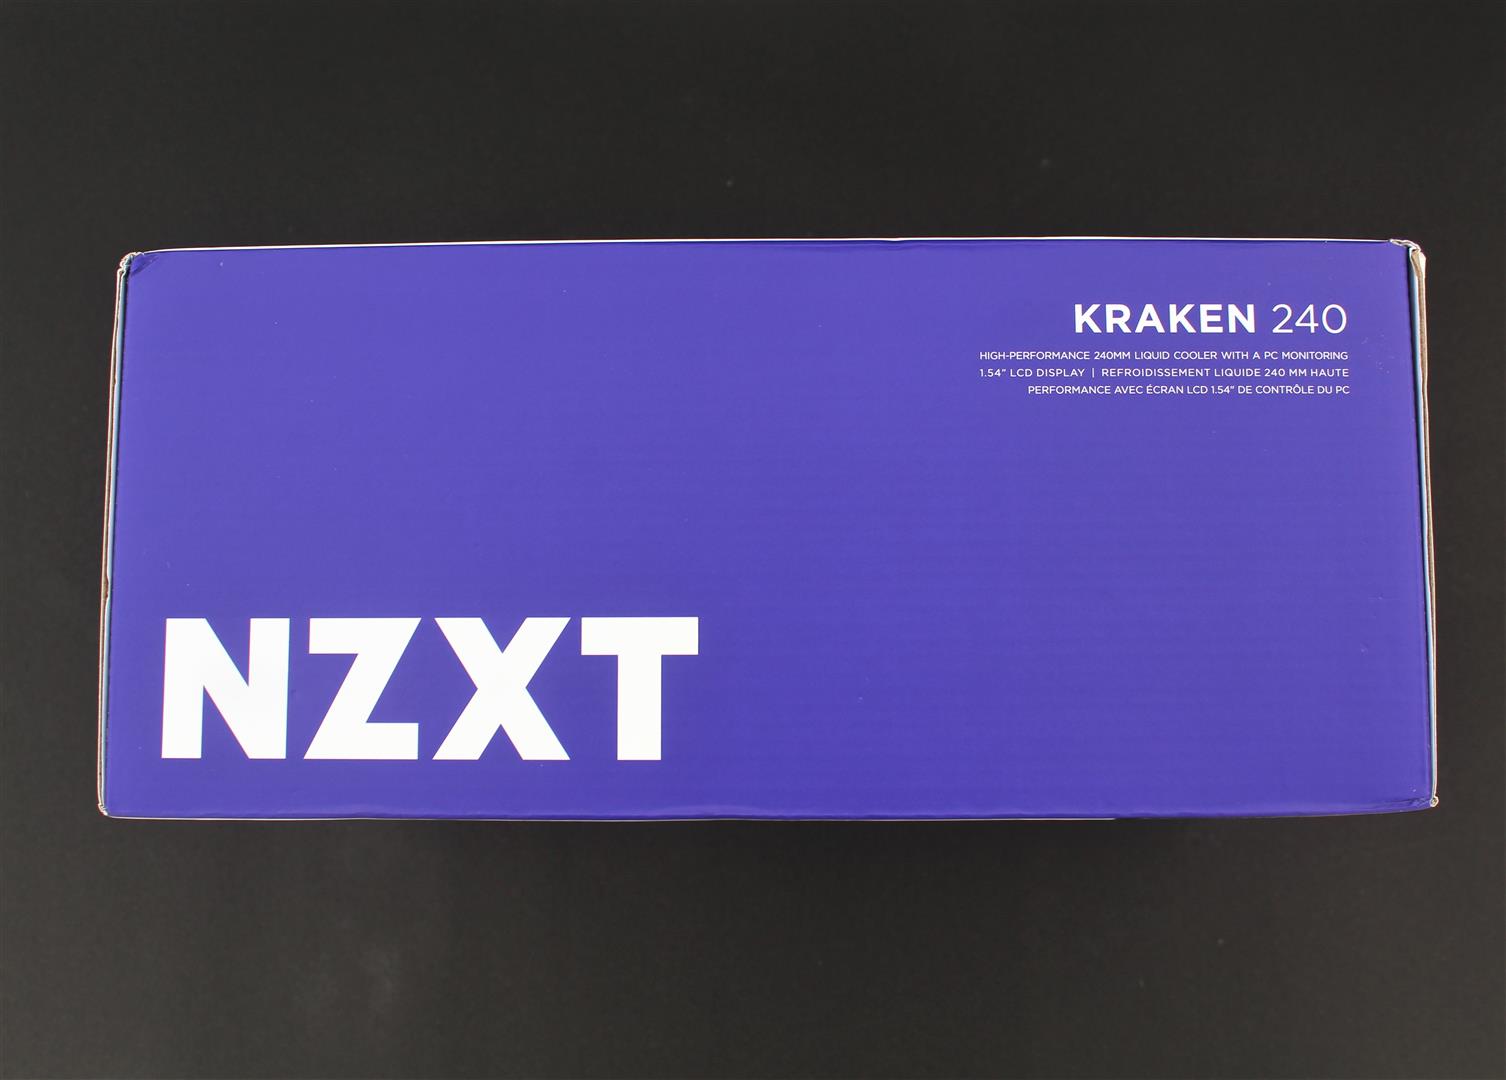 NZXT KRAKEN 240 Liquid | PC Review REVIEWS TeK Cooler